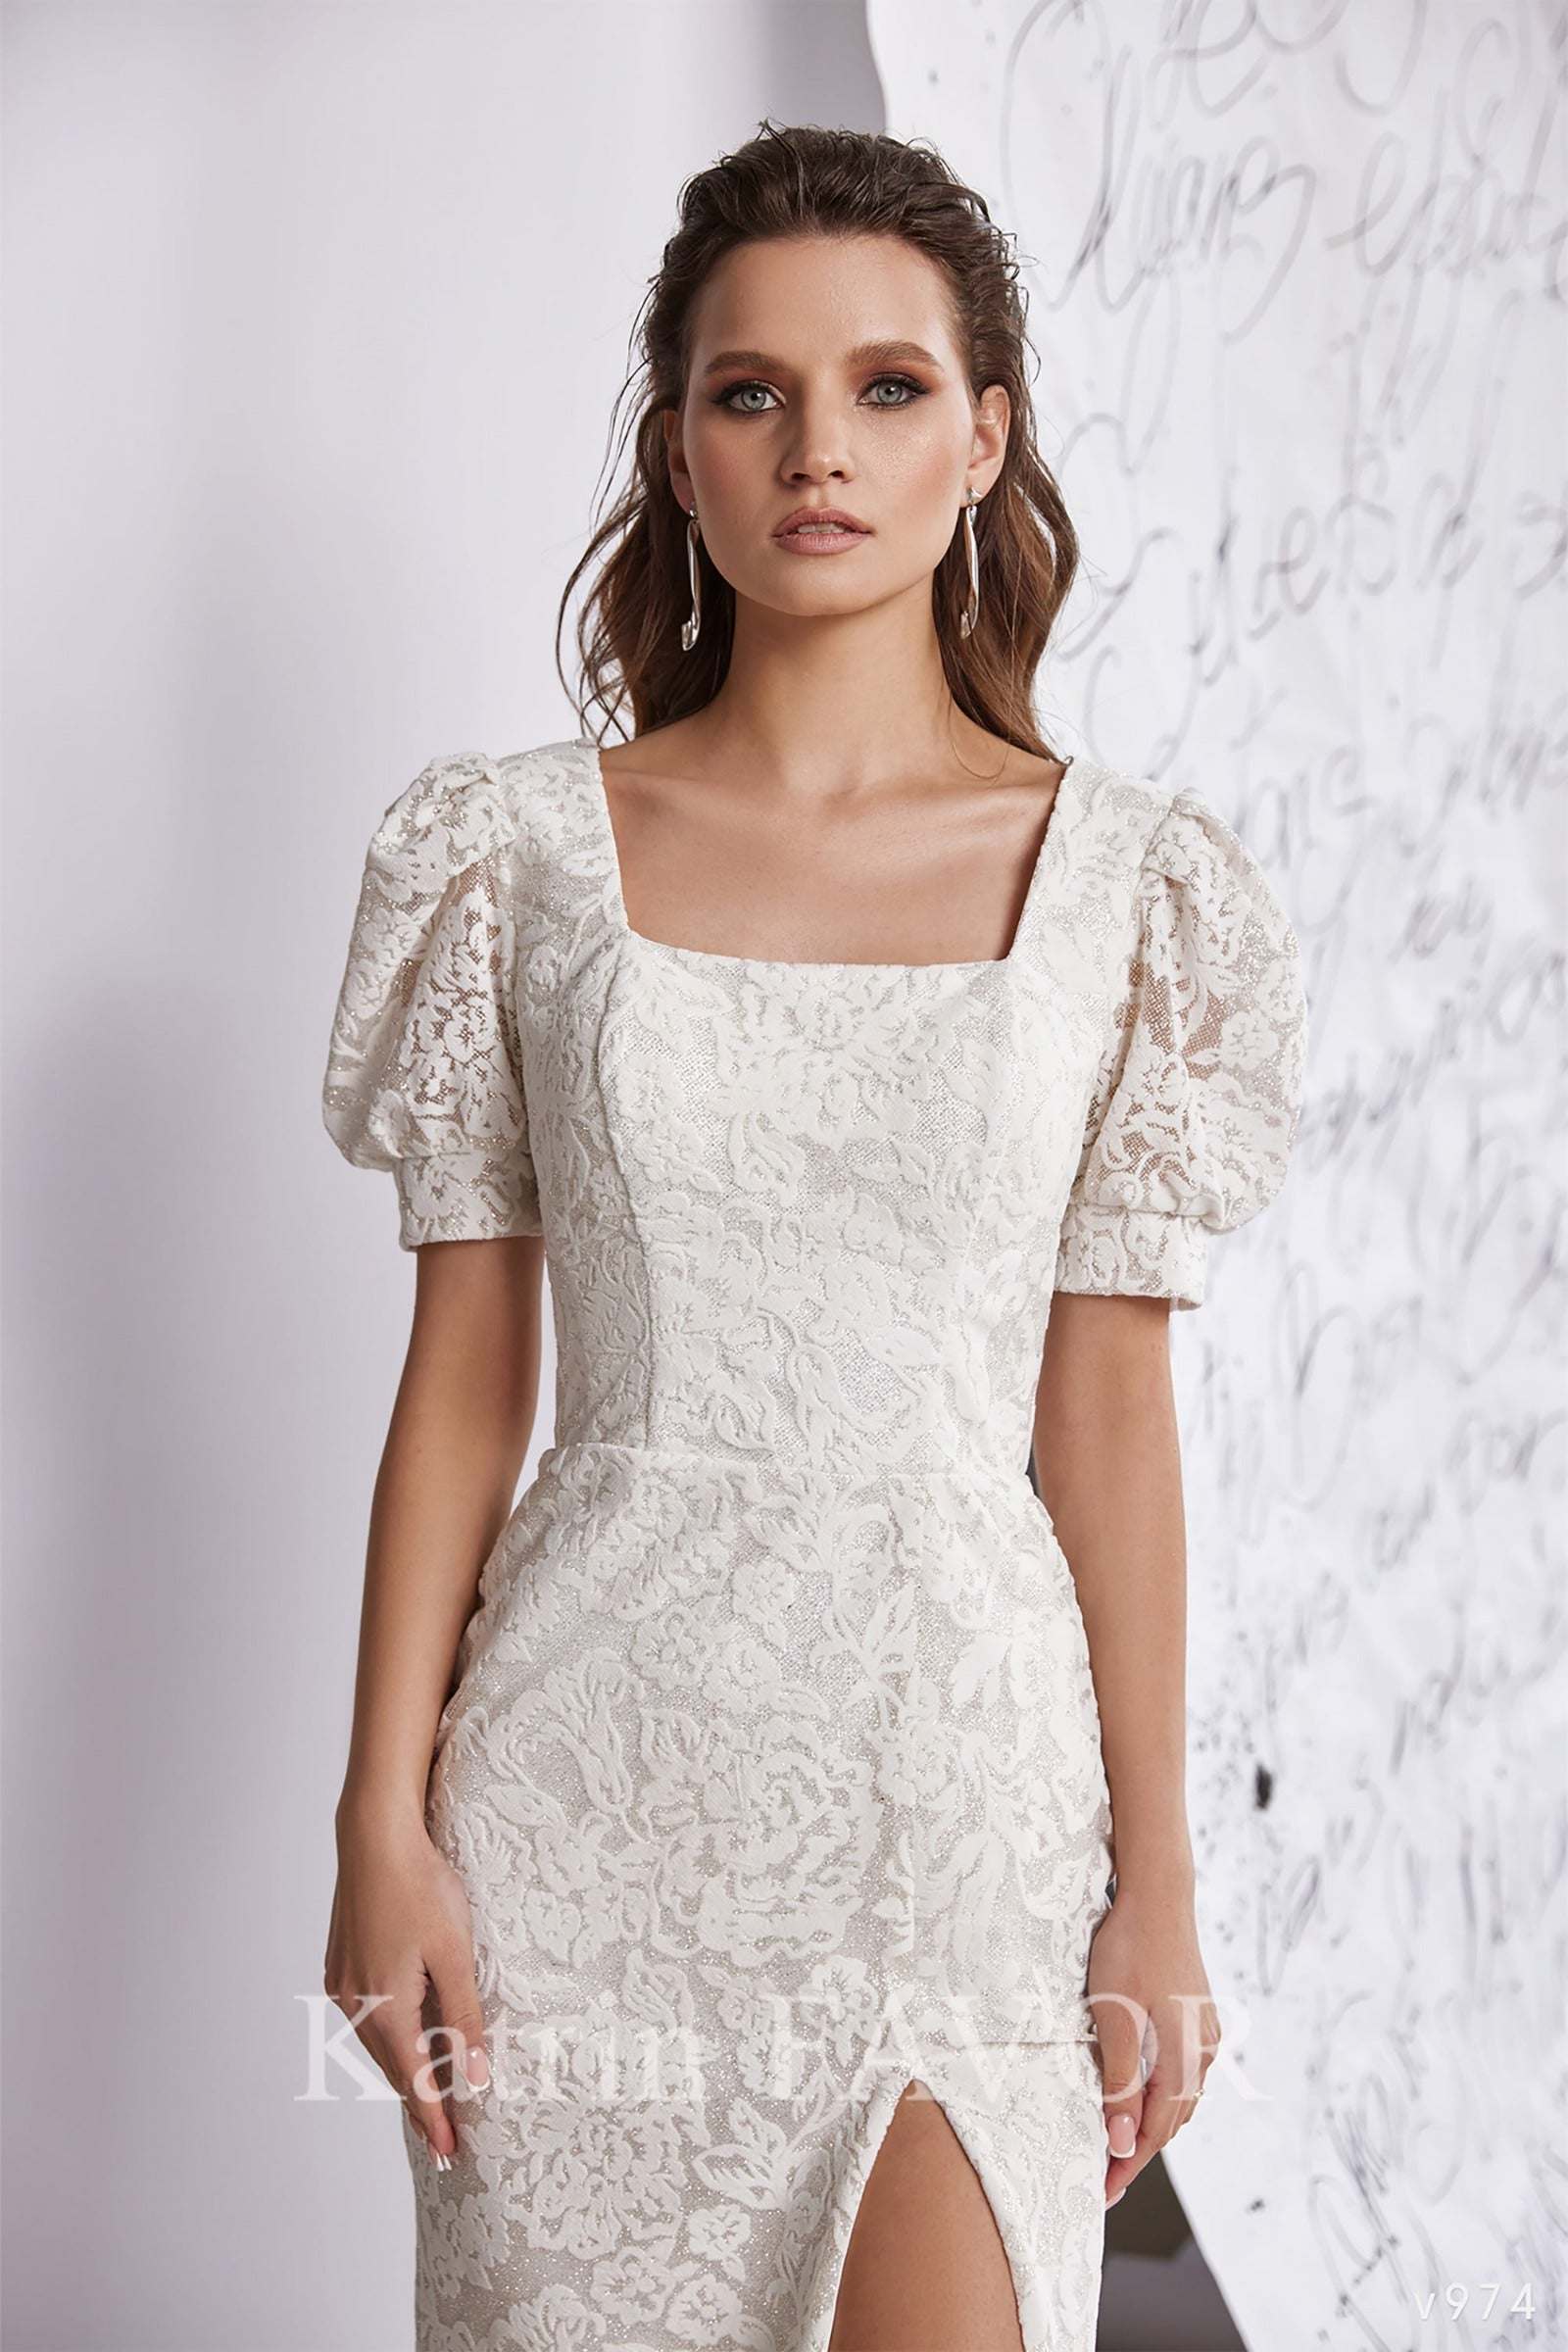 KatrinFAVORboutique-Wedding reception short dress formal white dress